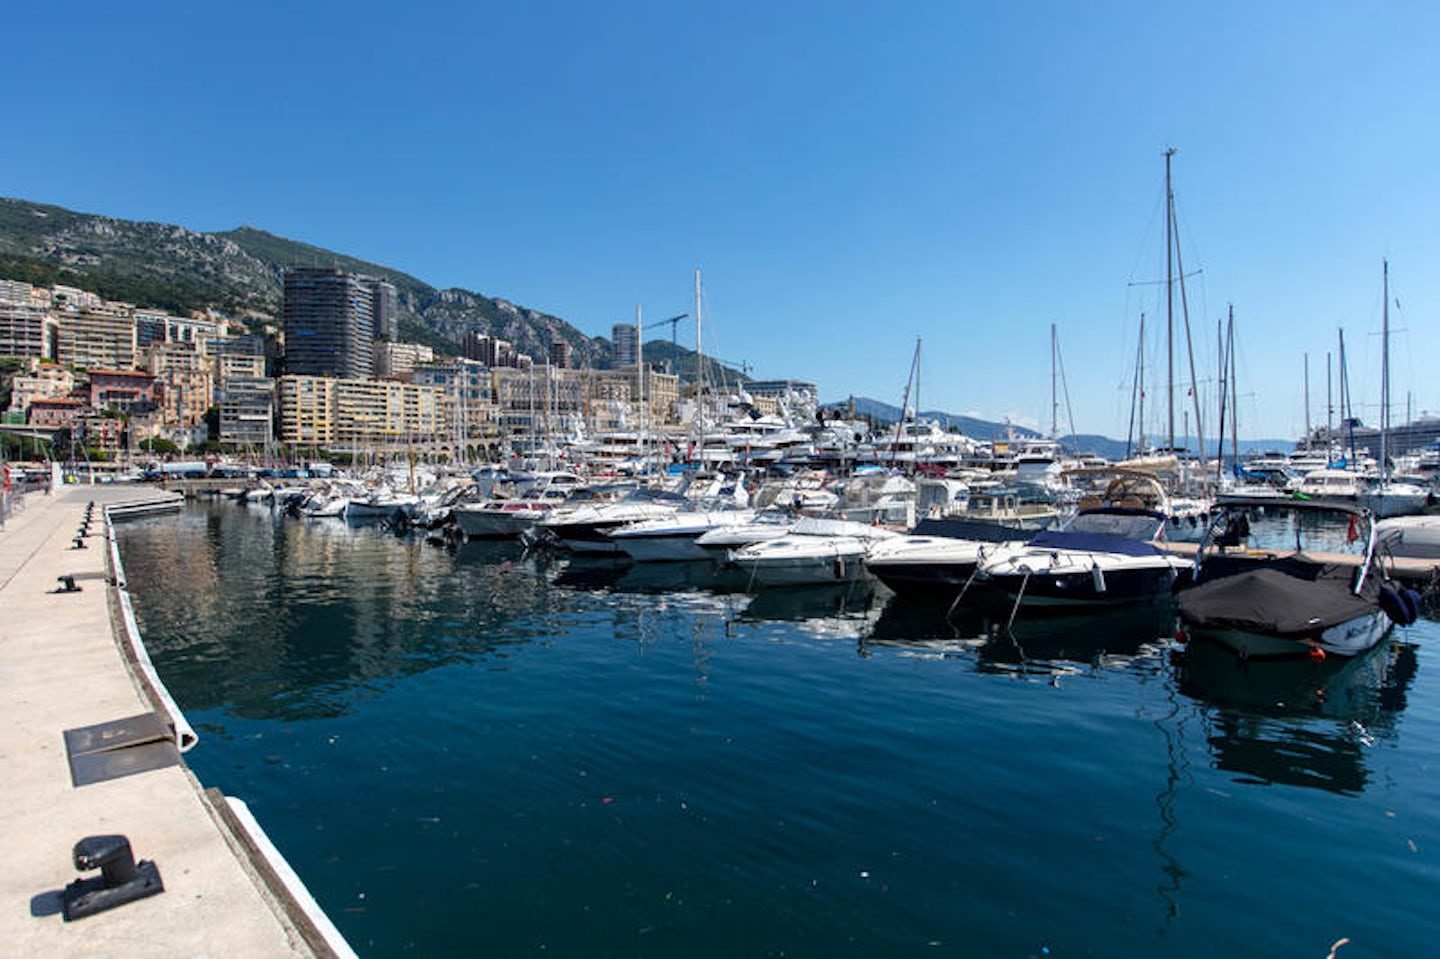 Monte Carlo Cruise Port